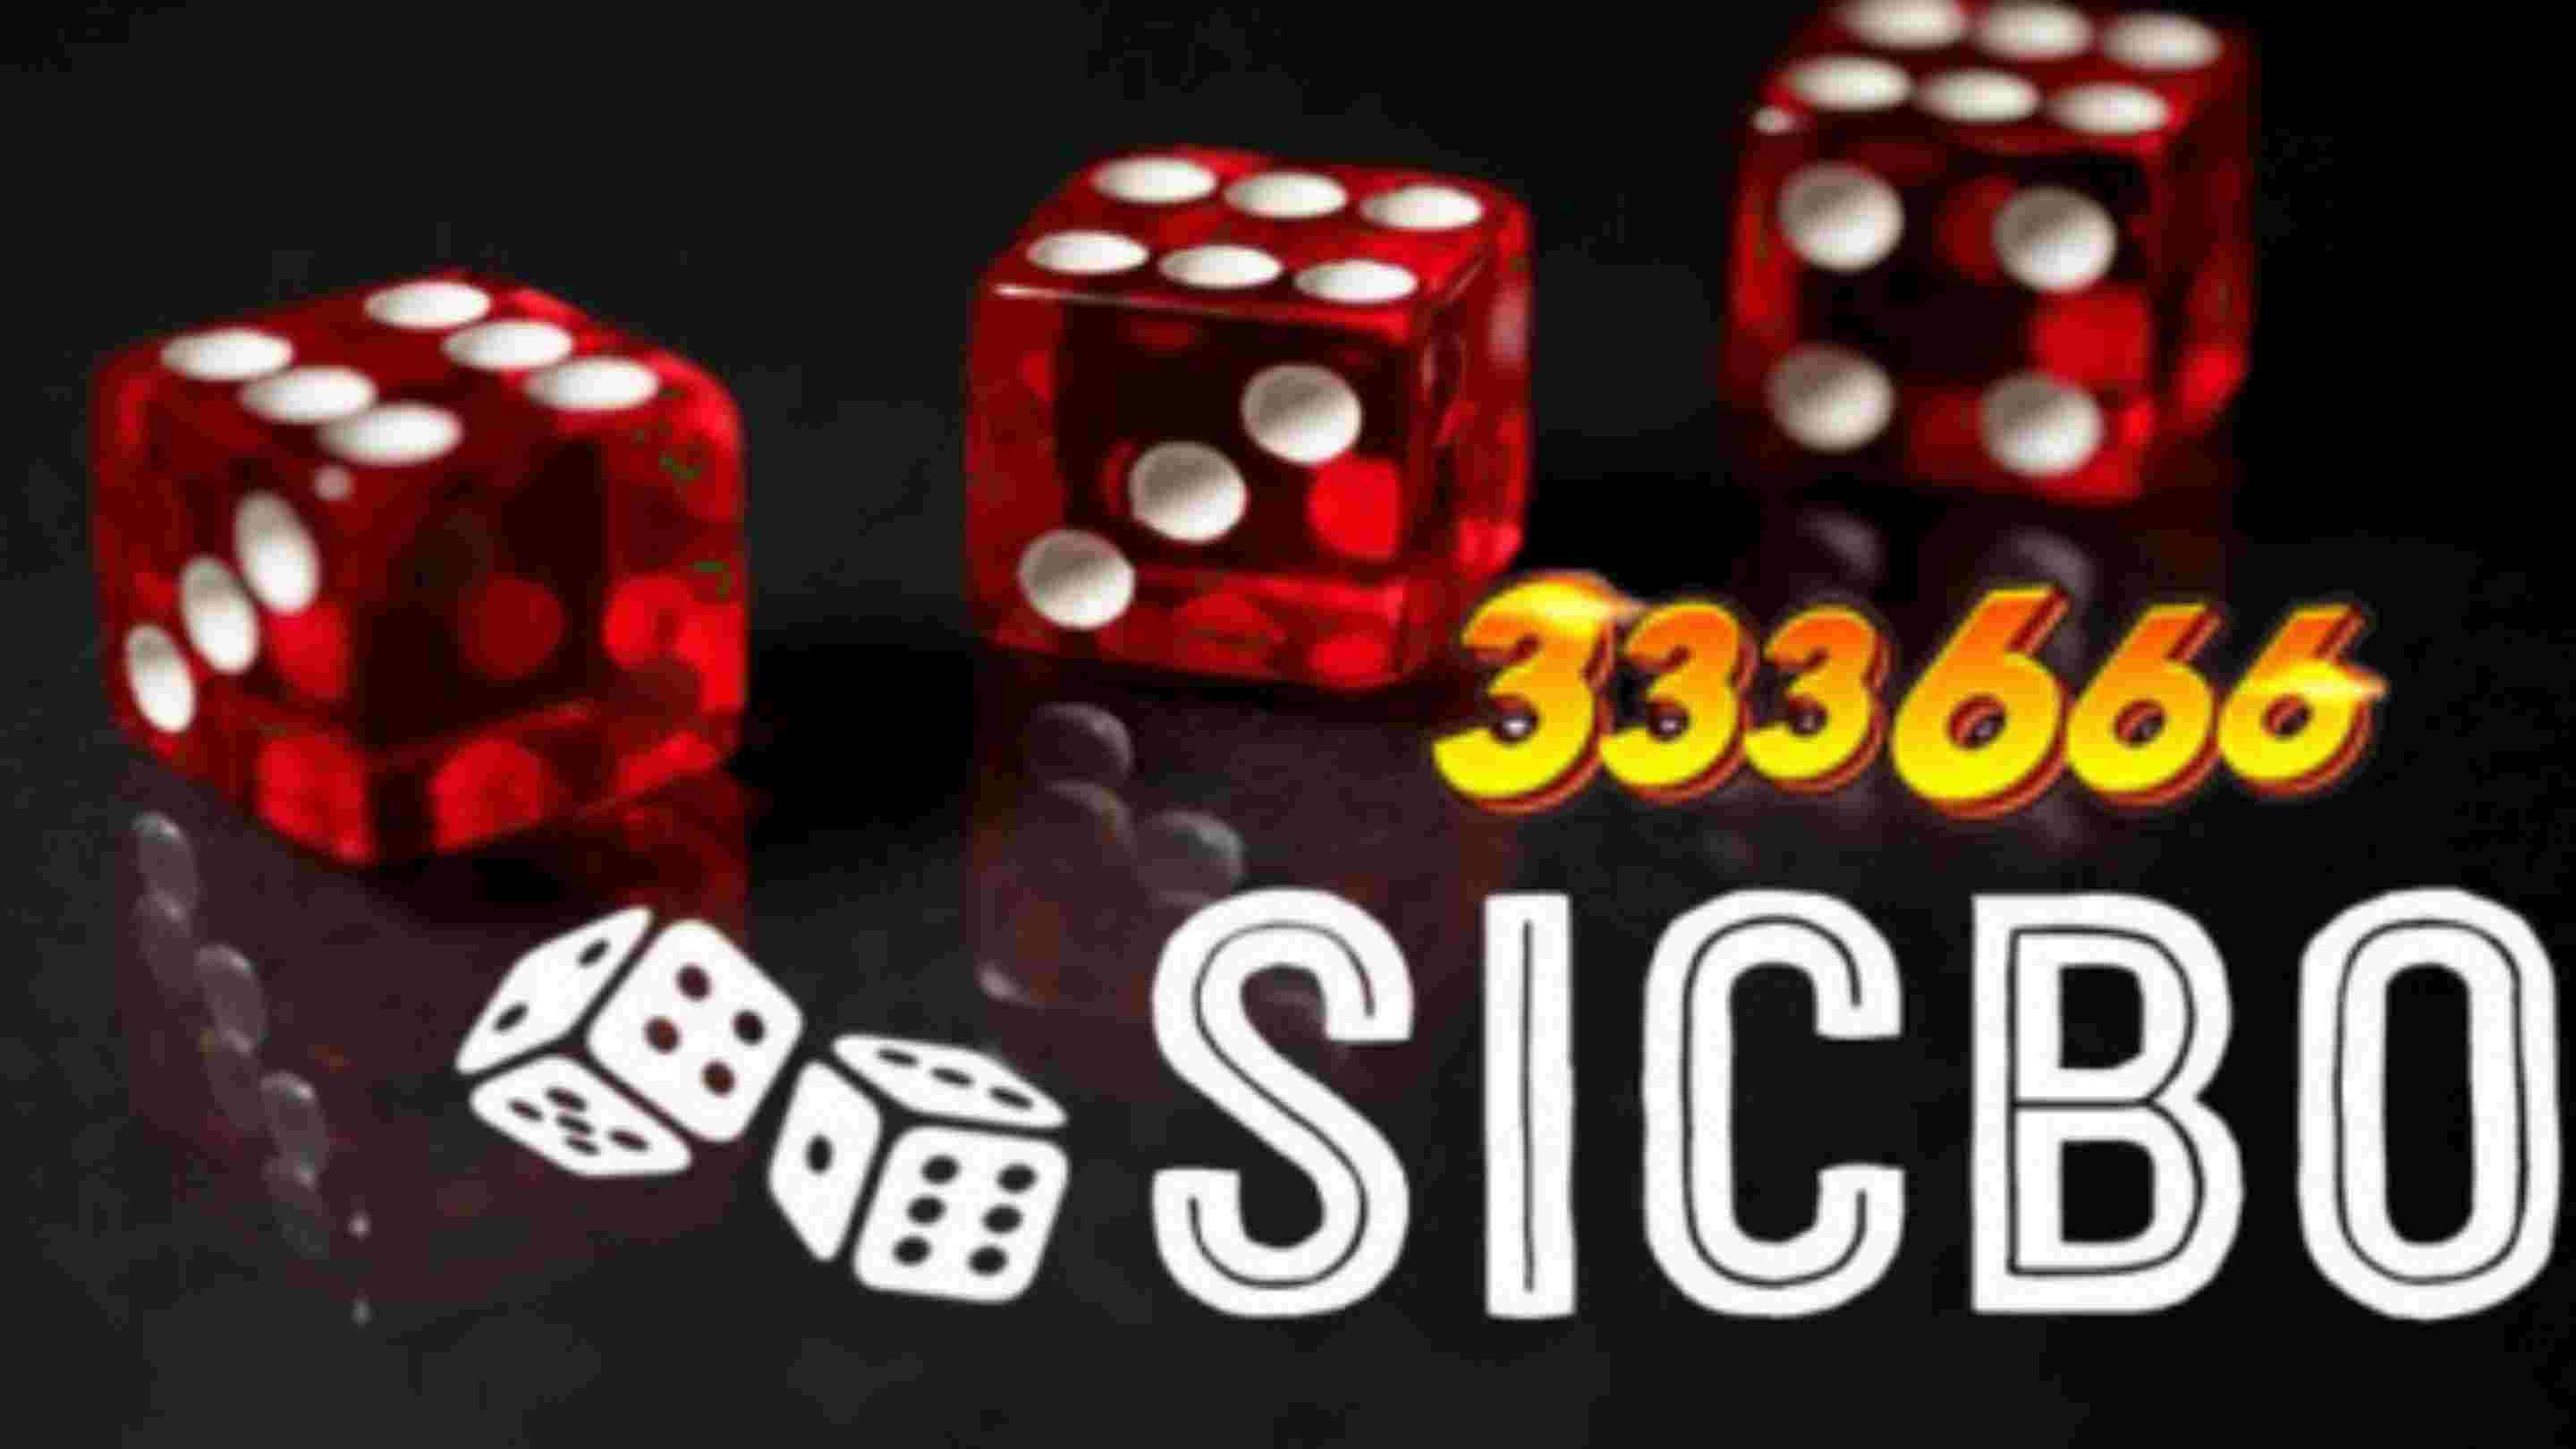 333666 Chia sẻ kinh nghiệm chơi Sicbo thắng đậm.jpg